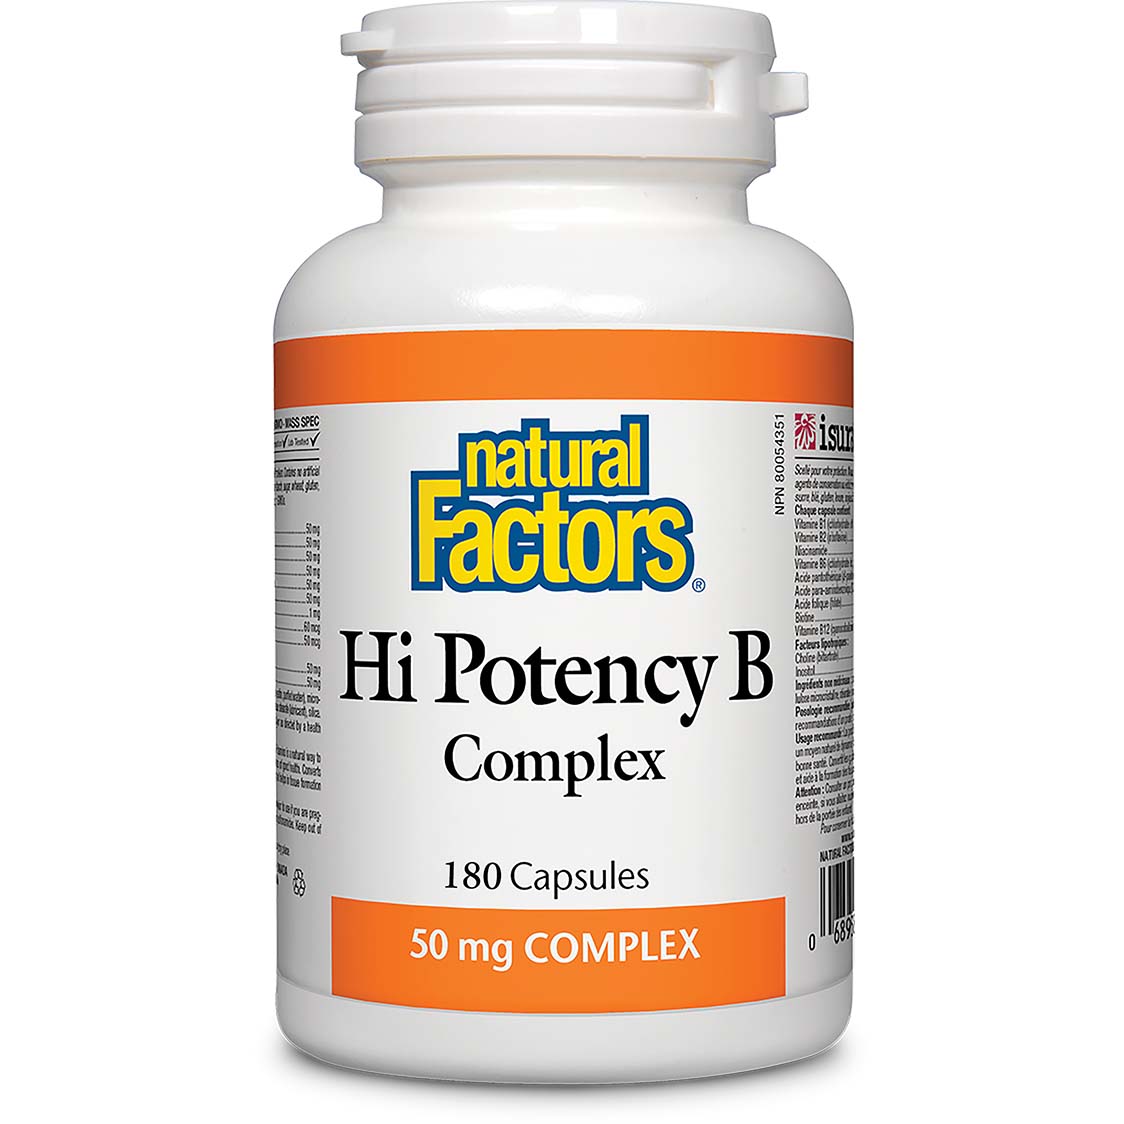 Natural Factors Hi Potency B Complex, 50 mg, 180 Capsules